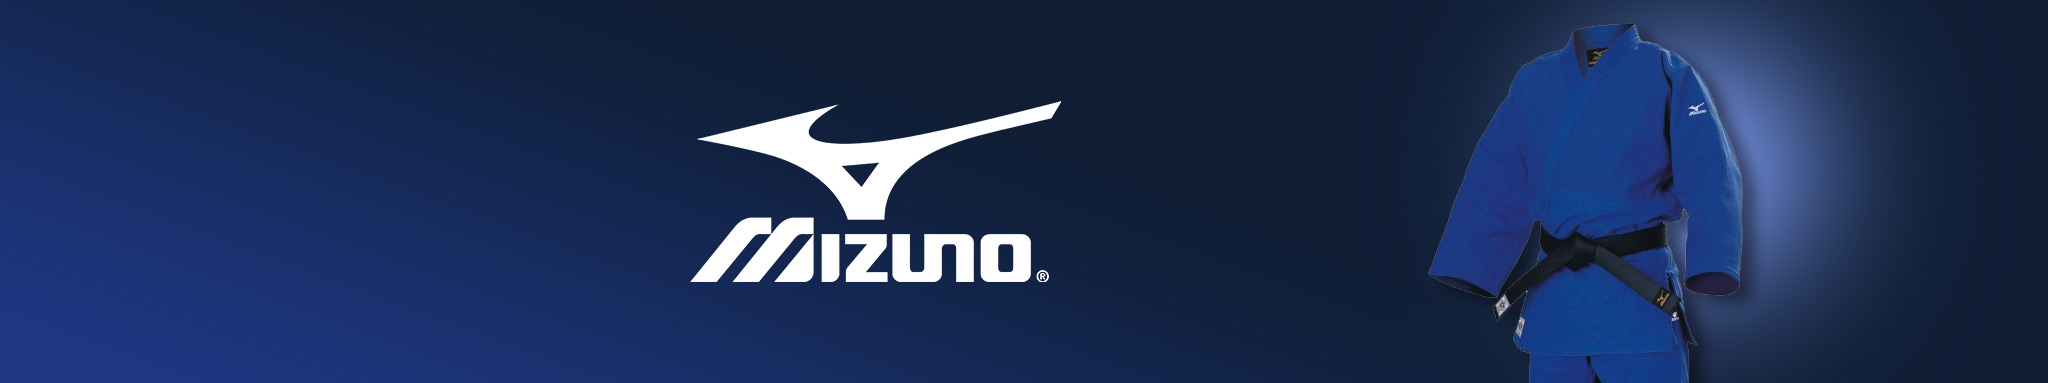 Mizuno : équipements & vêtements de la marque Mizuno | Dragon Bleu